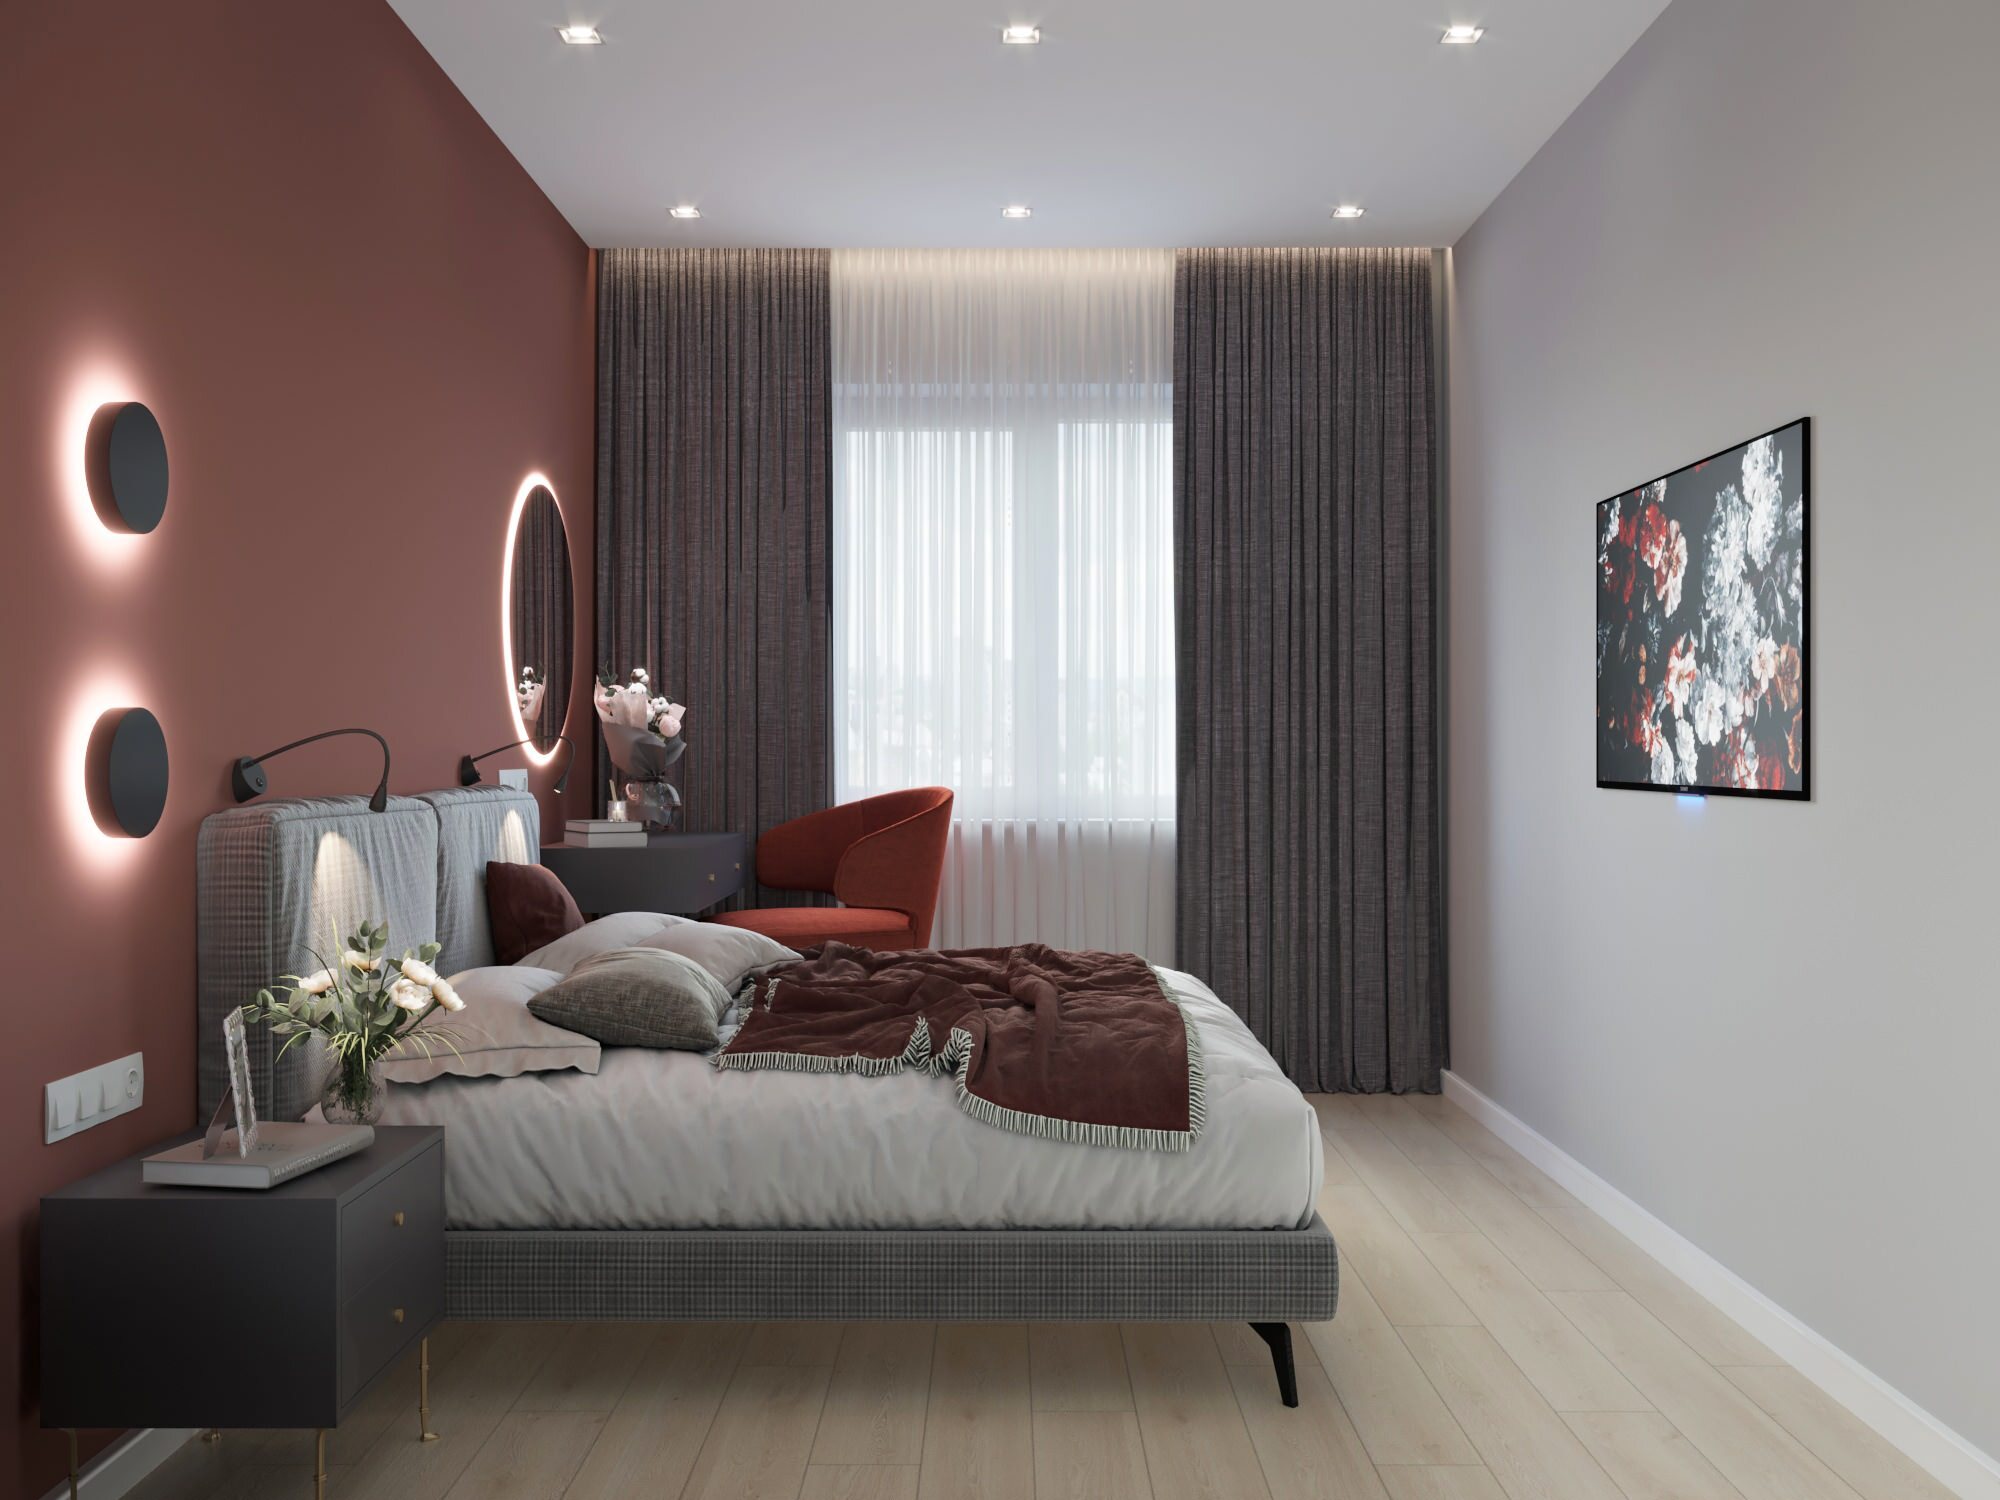 Интерьер спальни cветовыми линиями, рейками с подсветкой, подсветкой настенной и светильниками над кроватью в современном стиле